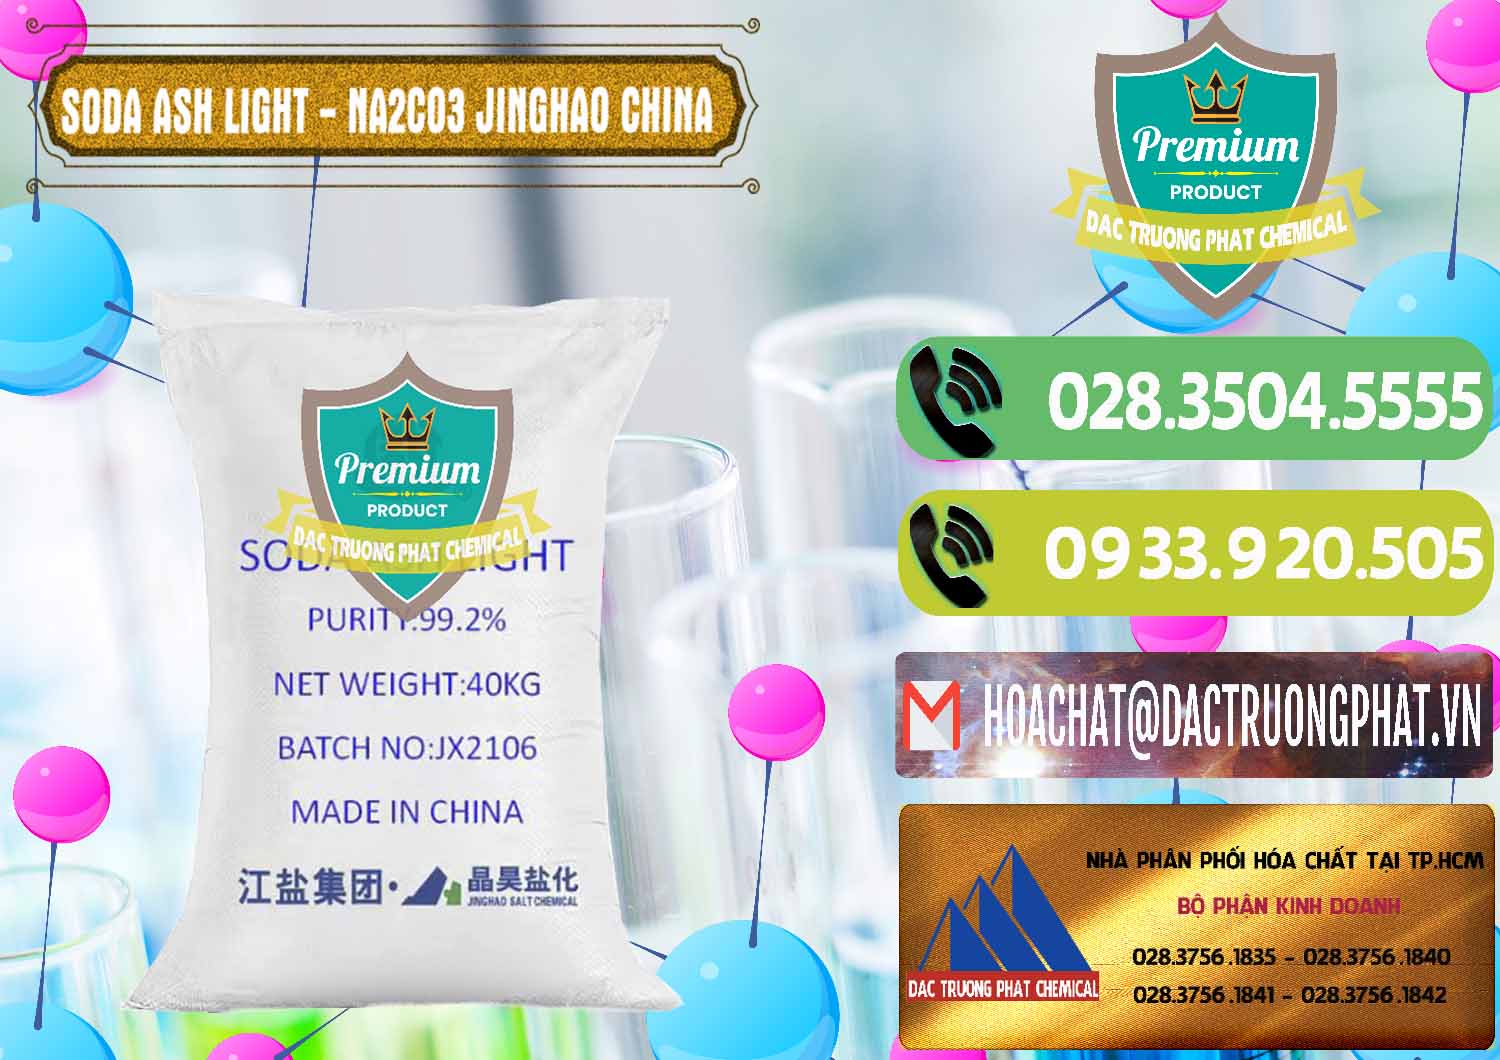 Công ty chuyên cung ứng & bán Soda Ash Light - NA2CO3 Jinghao Trung Quốc China - 0339 - Nhà phân phối và bán hóa chất tại TP.HCM - hoachatmientay.vn